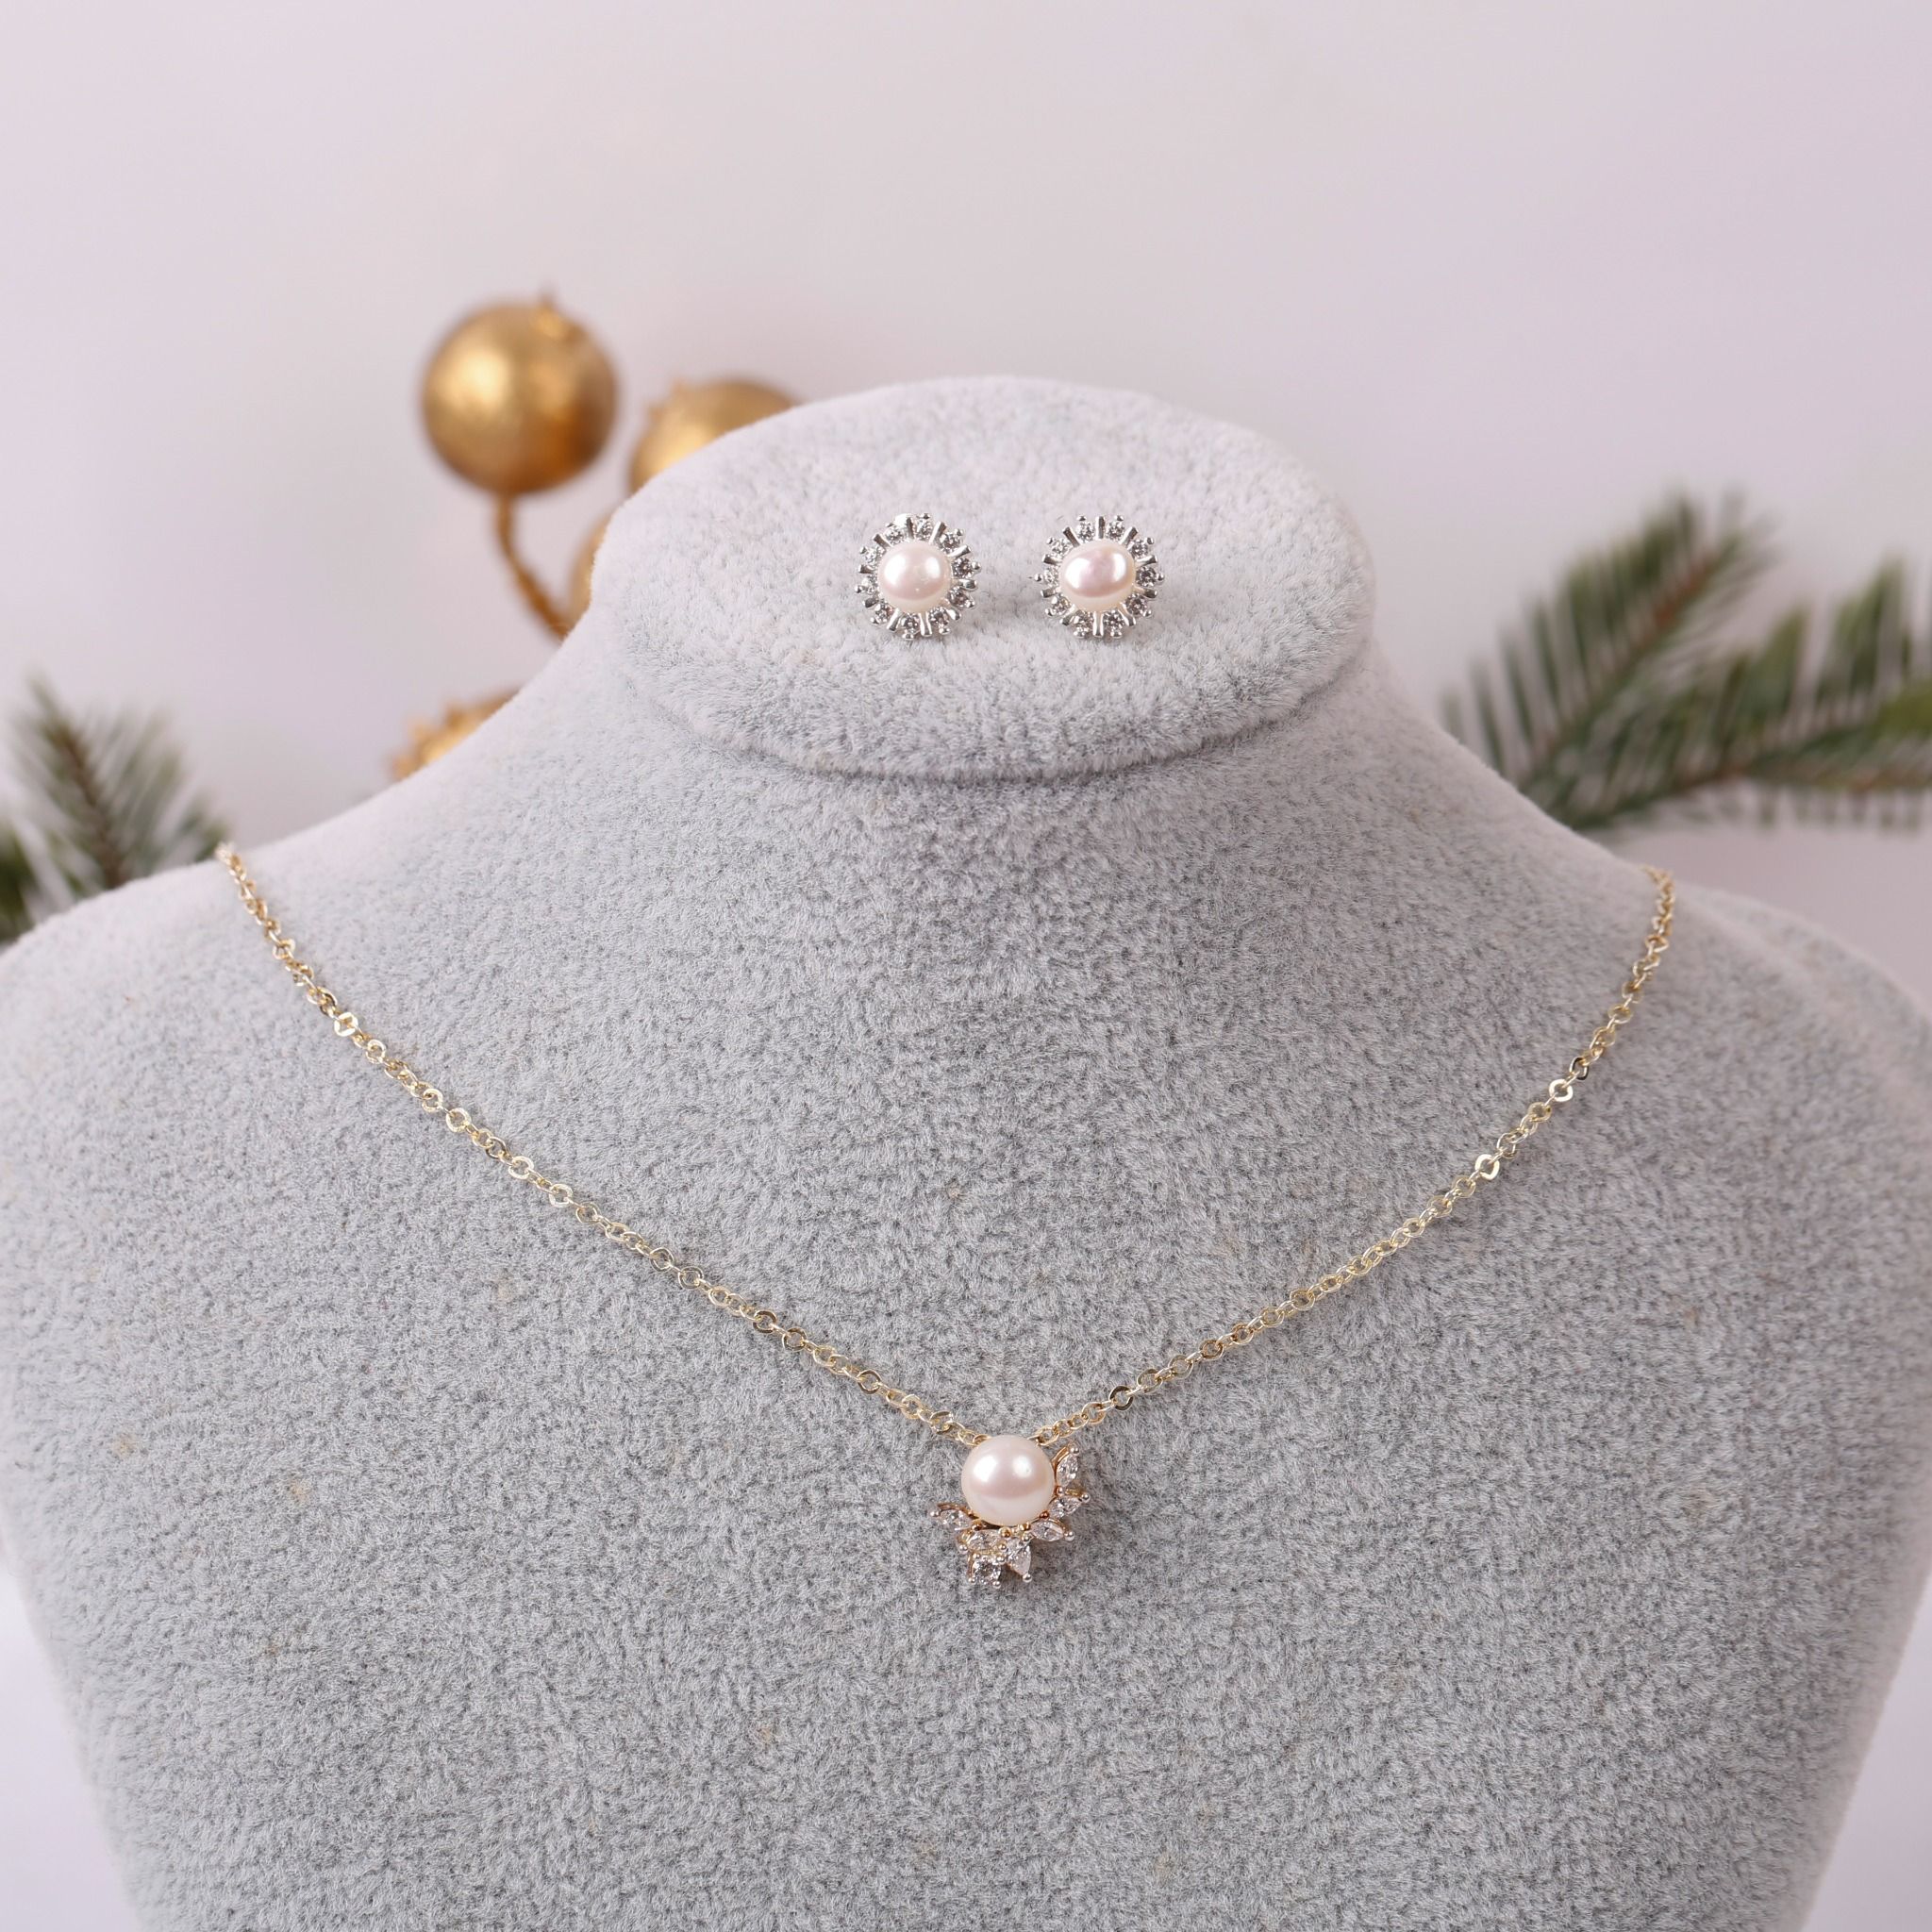  Dây chuyền và Hoa tai bạc đính Ngọc trai phong cách trẻ trung thương hiệu Opal 